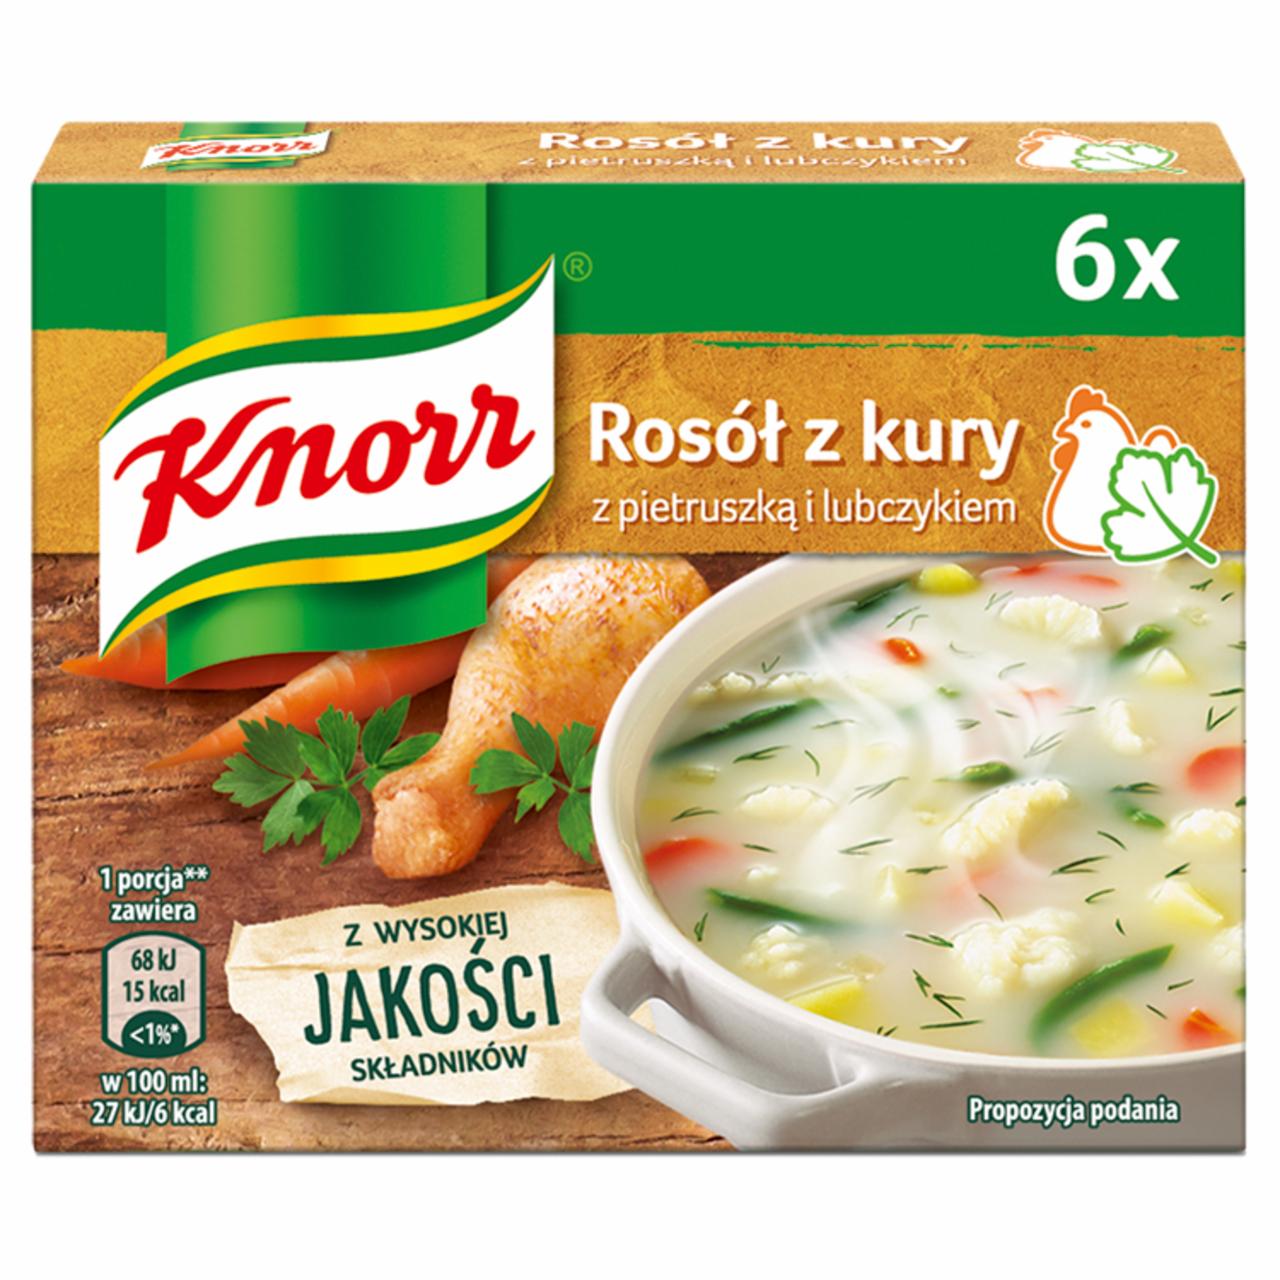 Zdjęcia - Knorr Rosół z kury z pietruszką i lubczykiem 60 g (6 x 10 g)